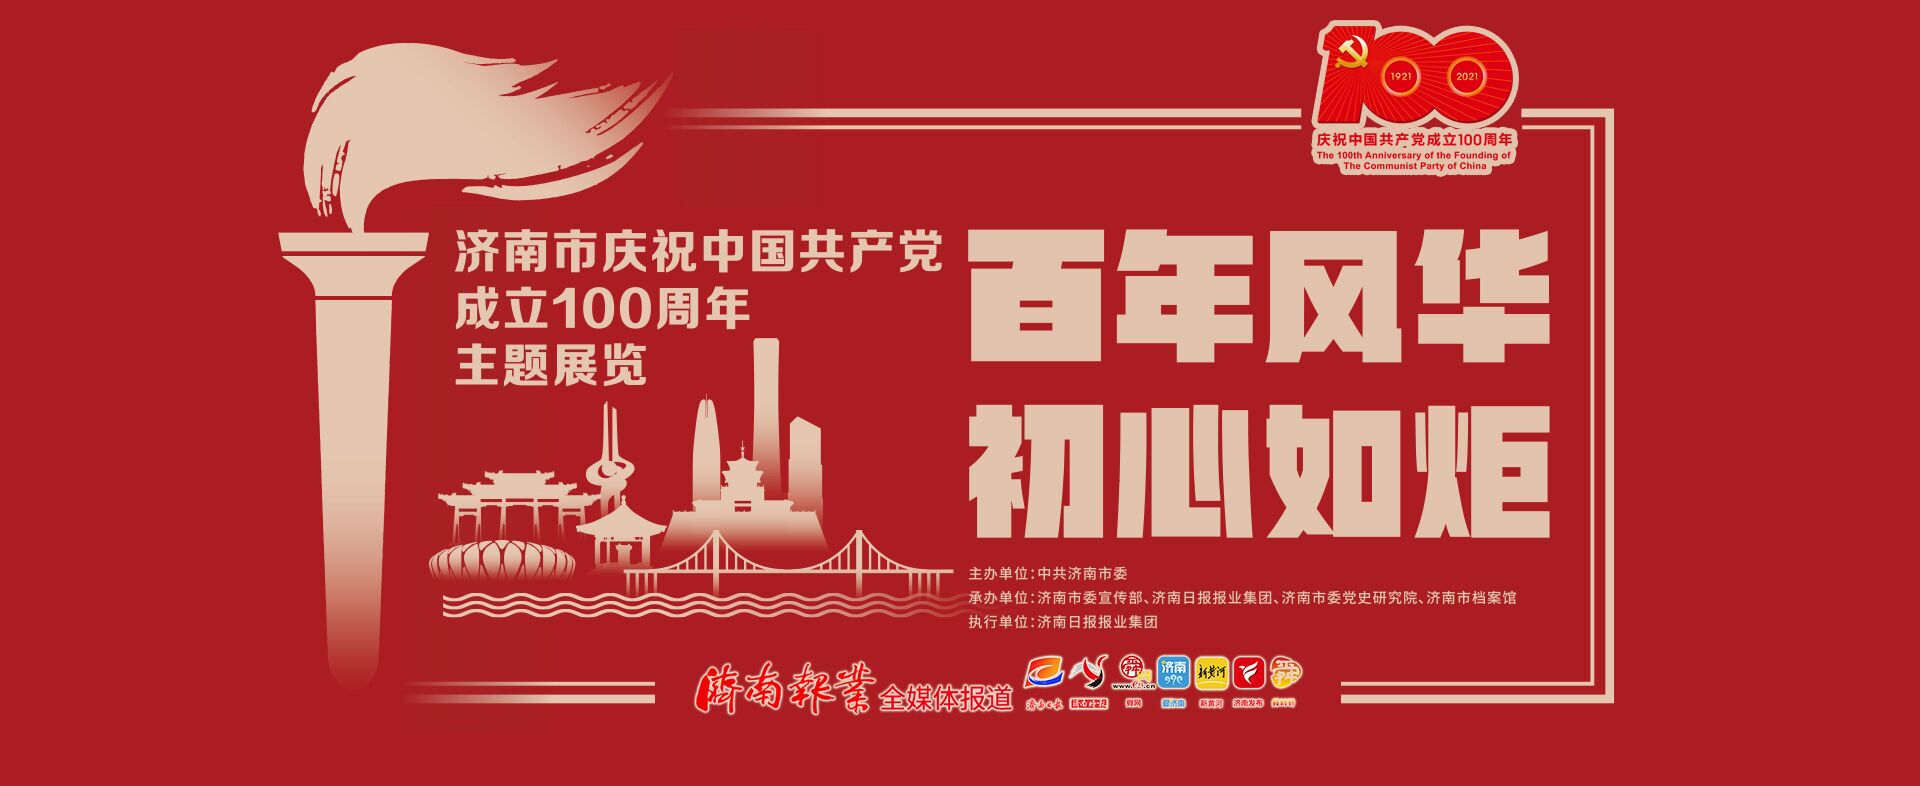 【百年风华 初心如炬】济南市庆祝中国共产党成立100周年主题展览上故事多 来，听听那些过去的事儿